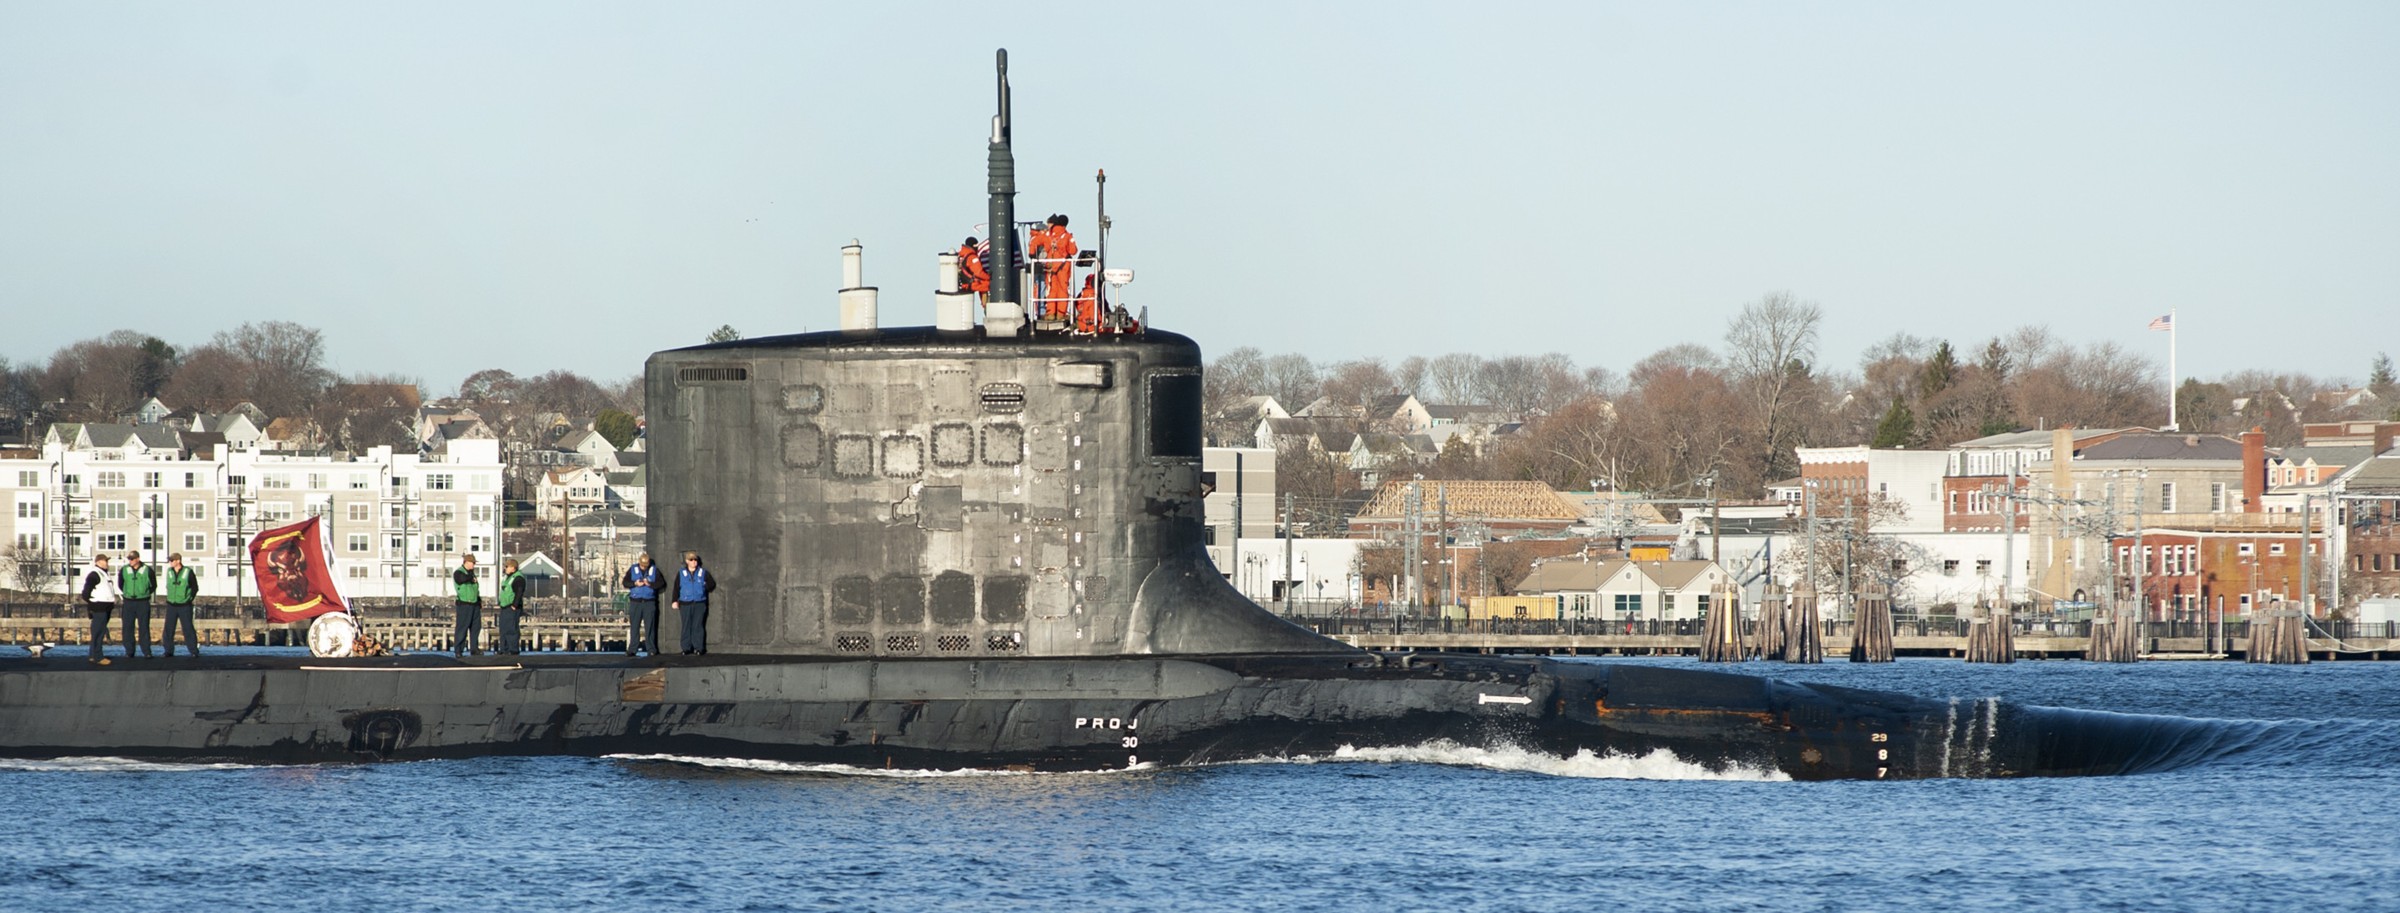 ssn-788 uss colorado virginia class attack submarine us navy 32 subase new london groton connecticut